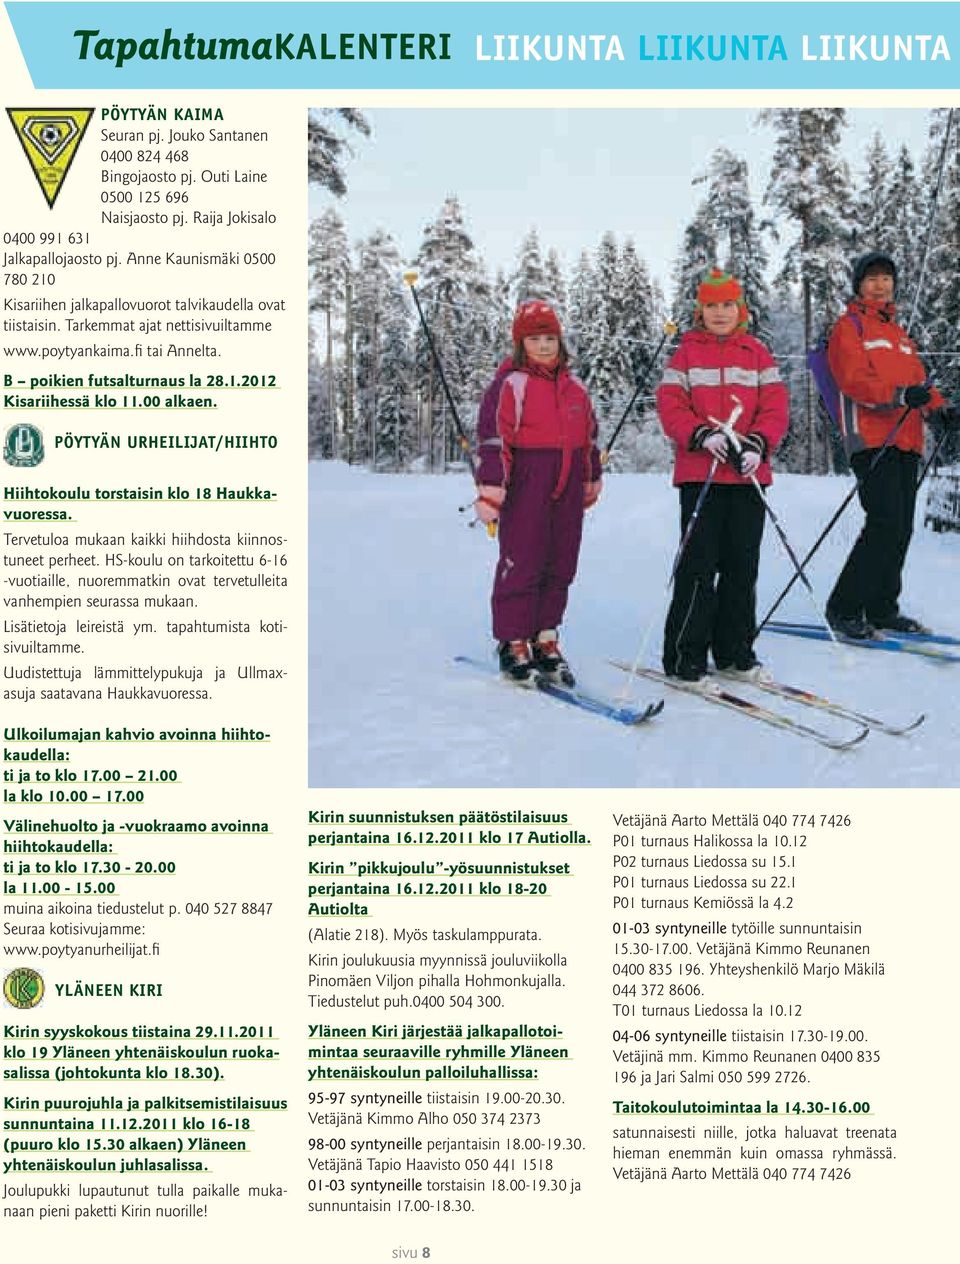 00 alkaen. Pöytyän Urheilijat/Hiihto Hiihtokoulu torstaisin klo 18 Haukkavuoressa. Tervetuloa mukaan kaikki hiihdosta kiinnostuneet perheet.